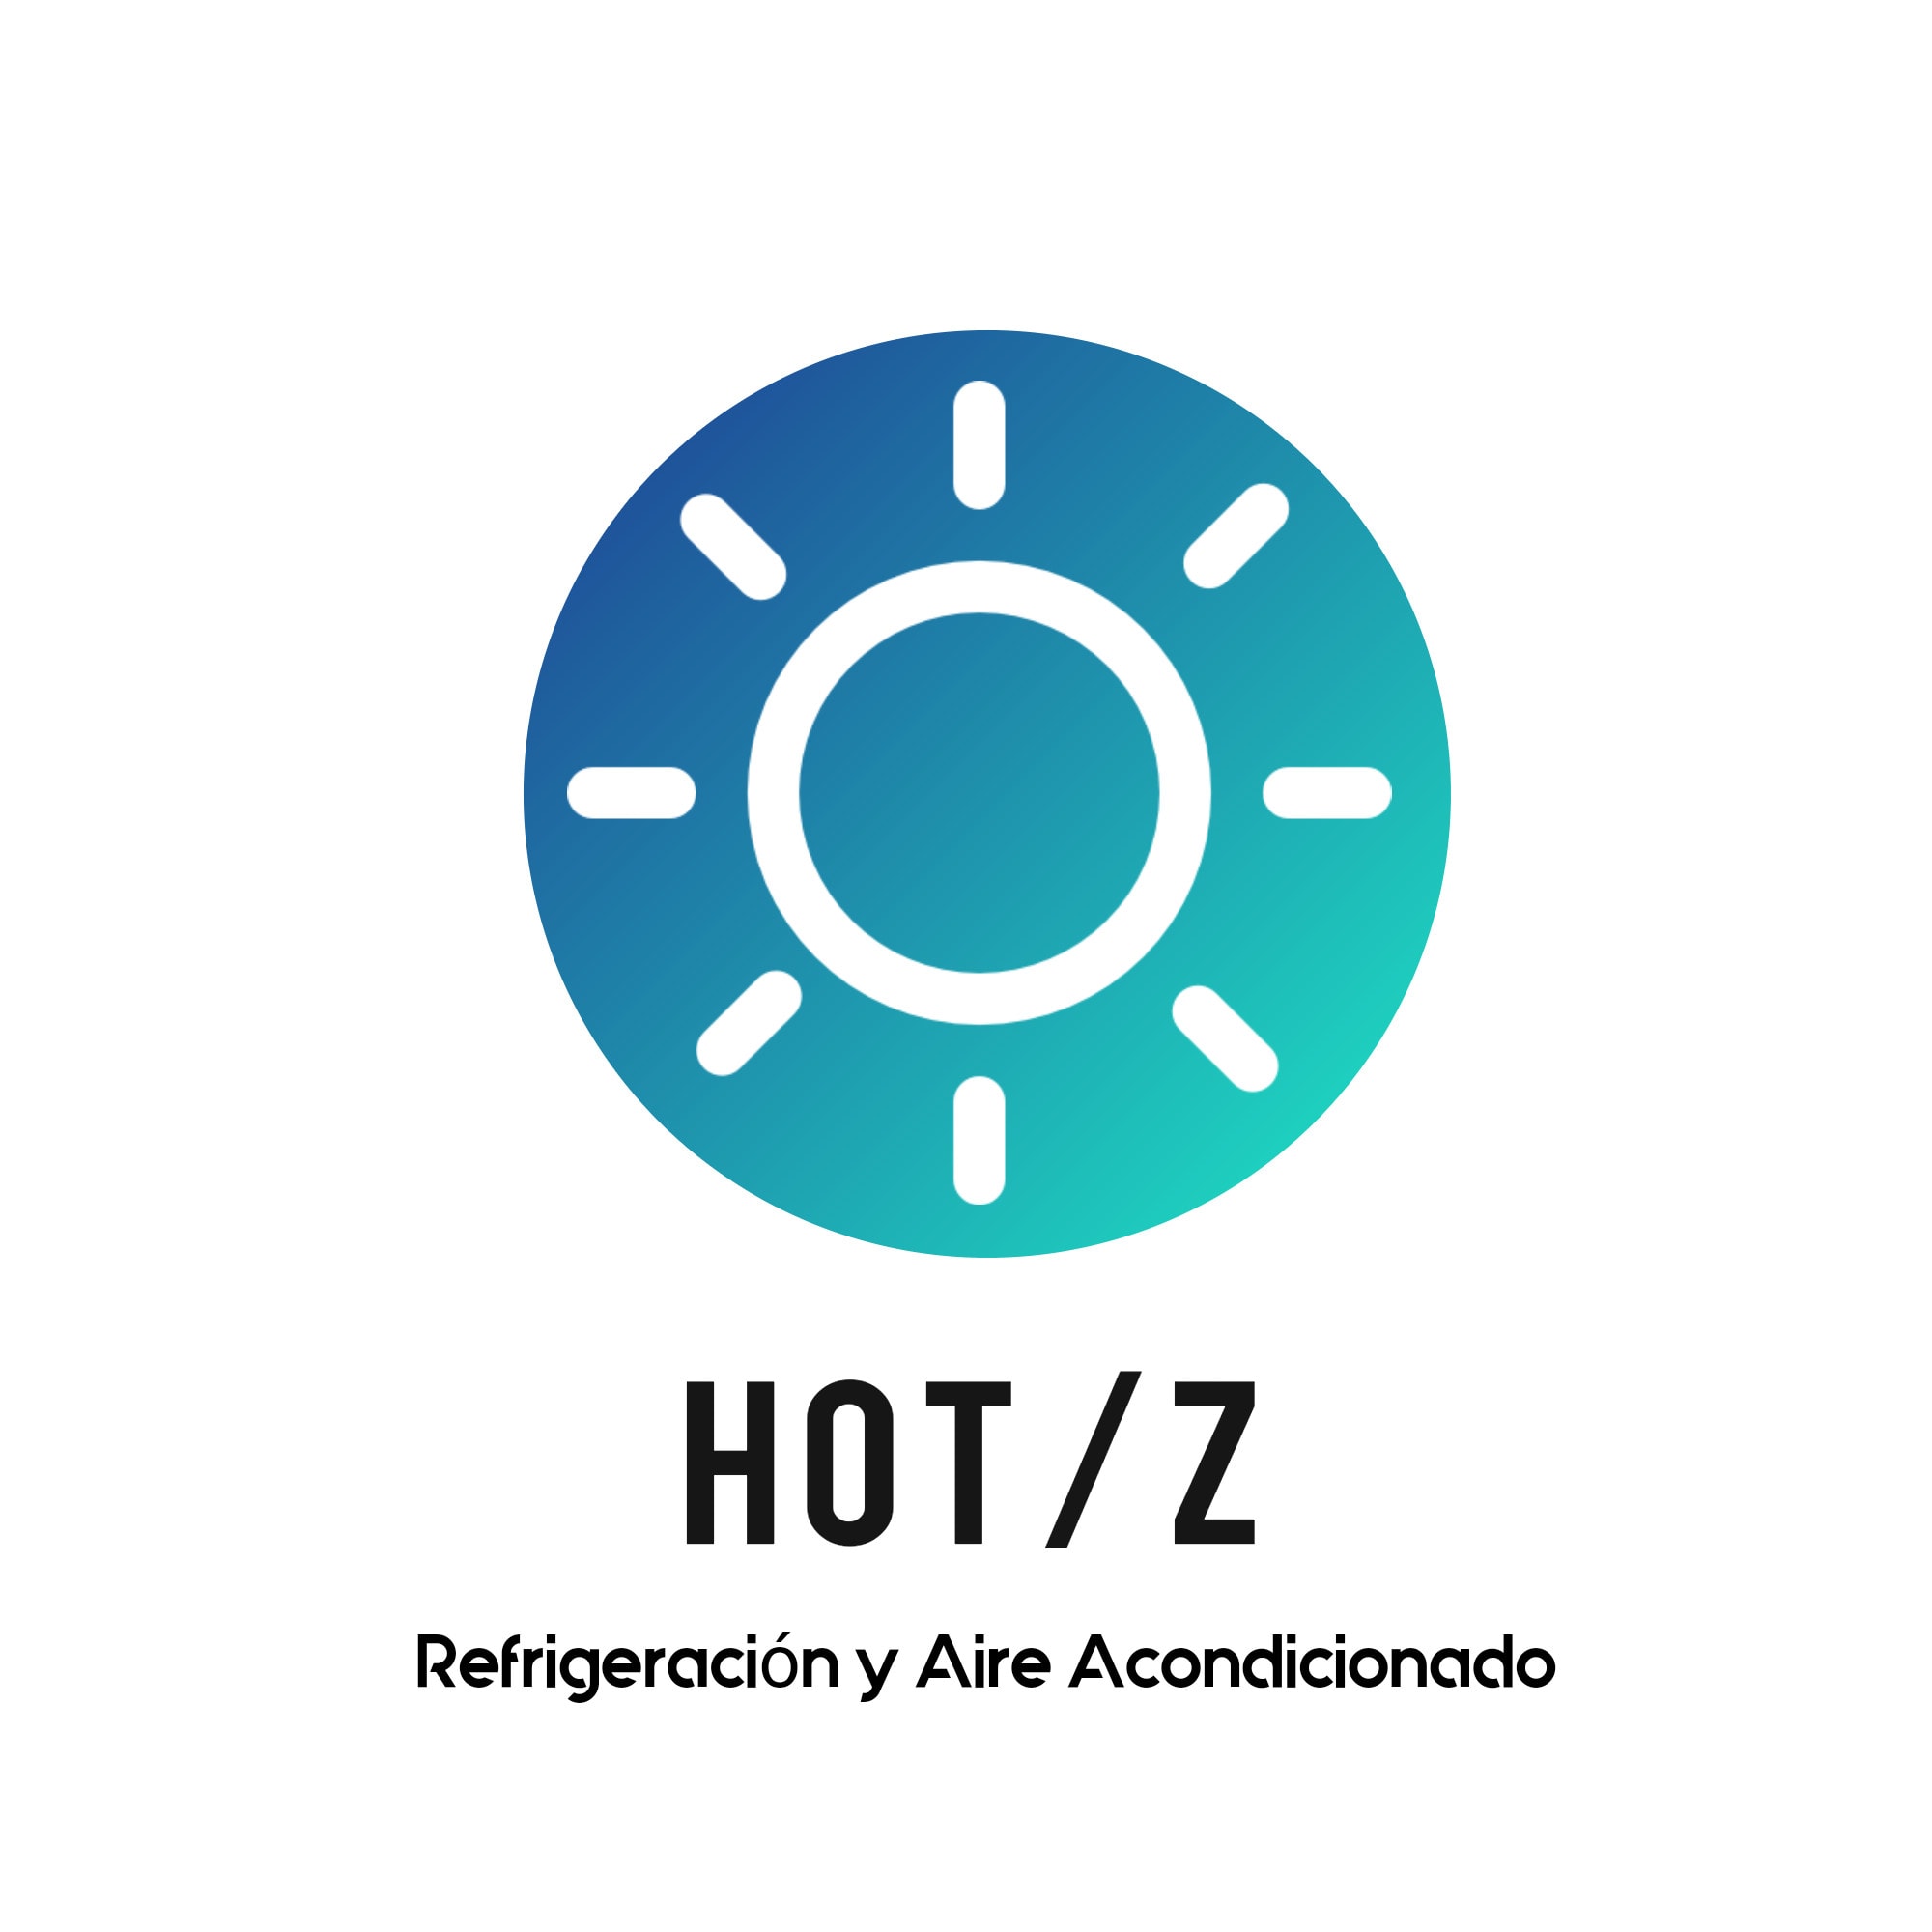 Hotz refrigeración y aire acondicionado